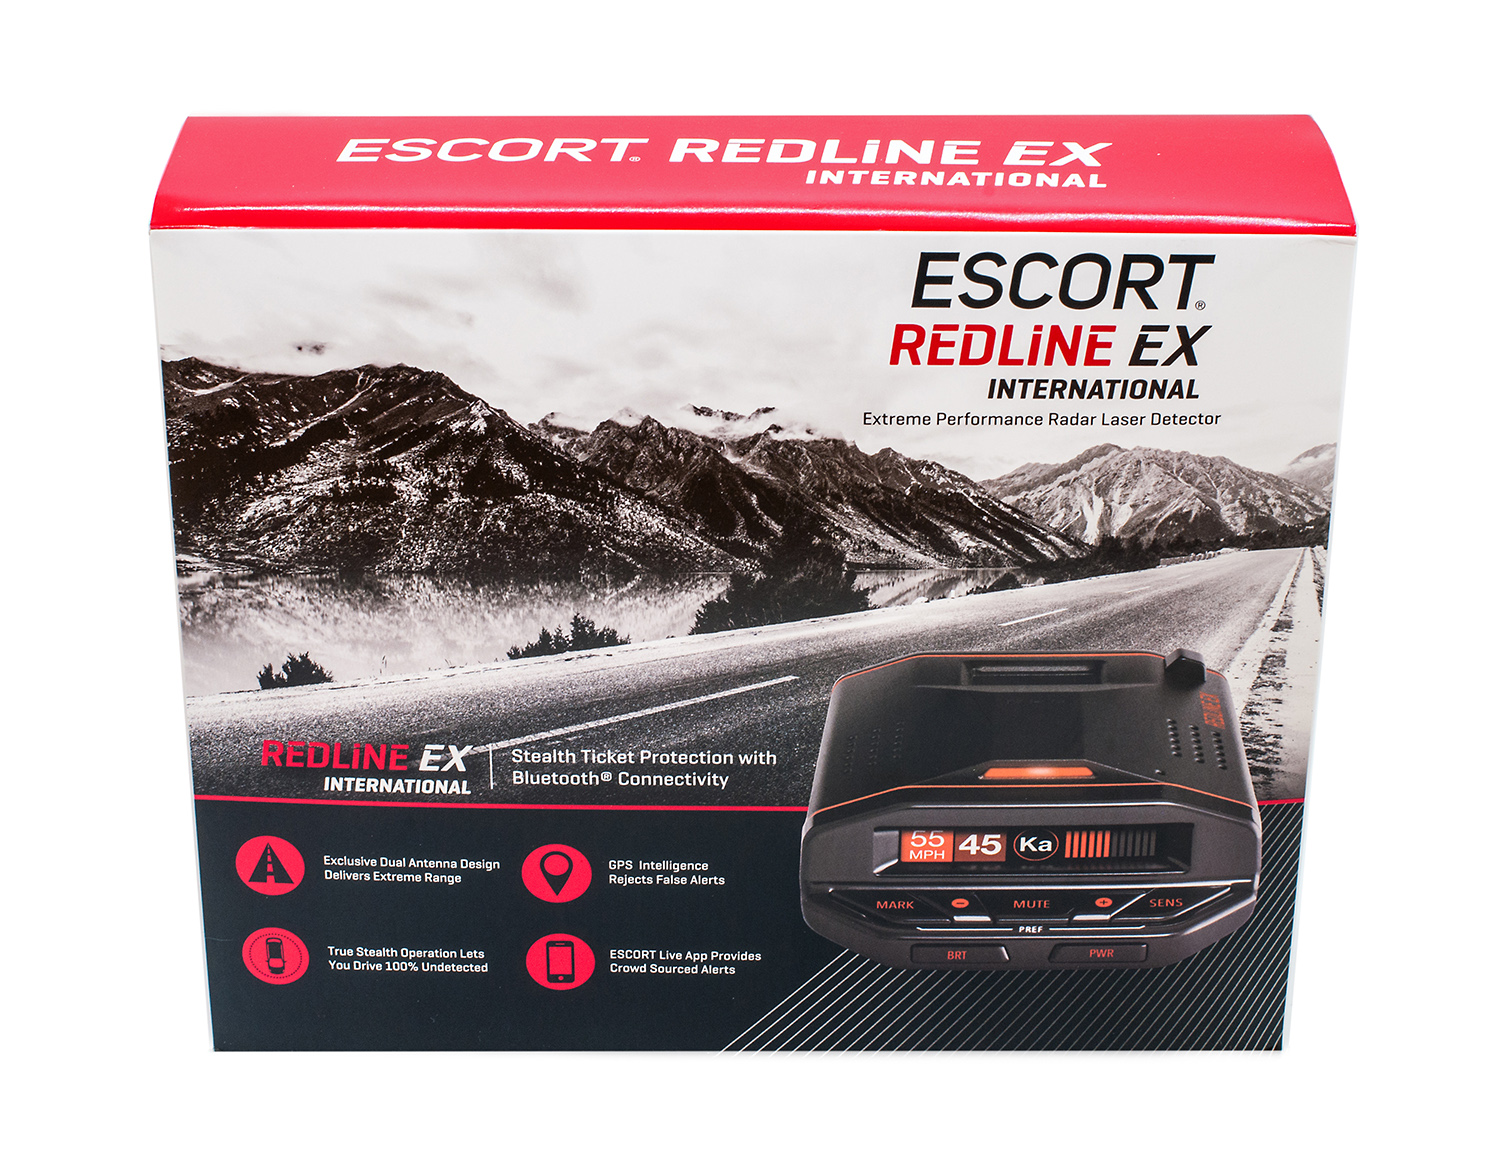 Escort Redline Ex